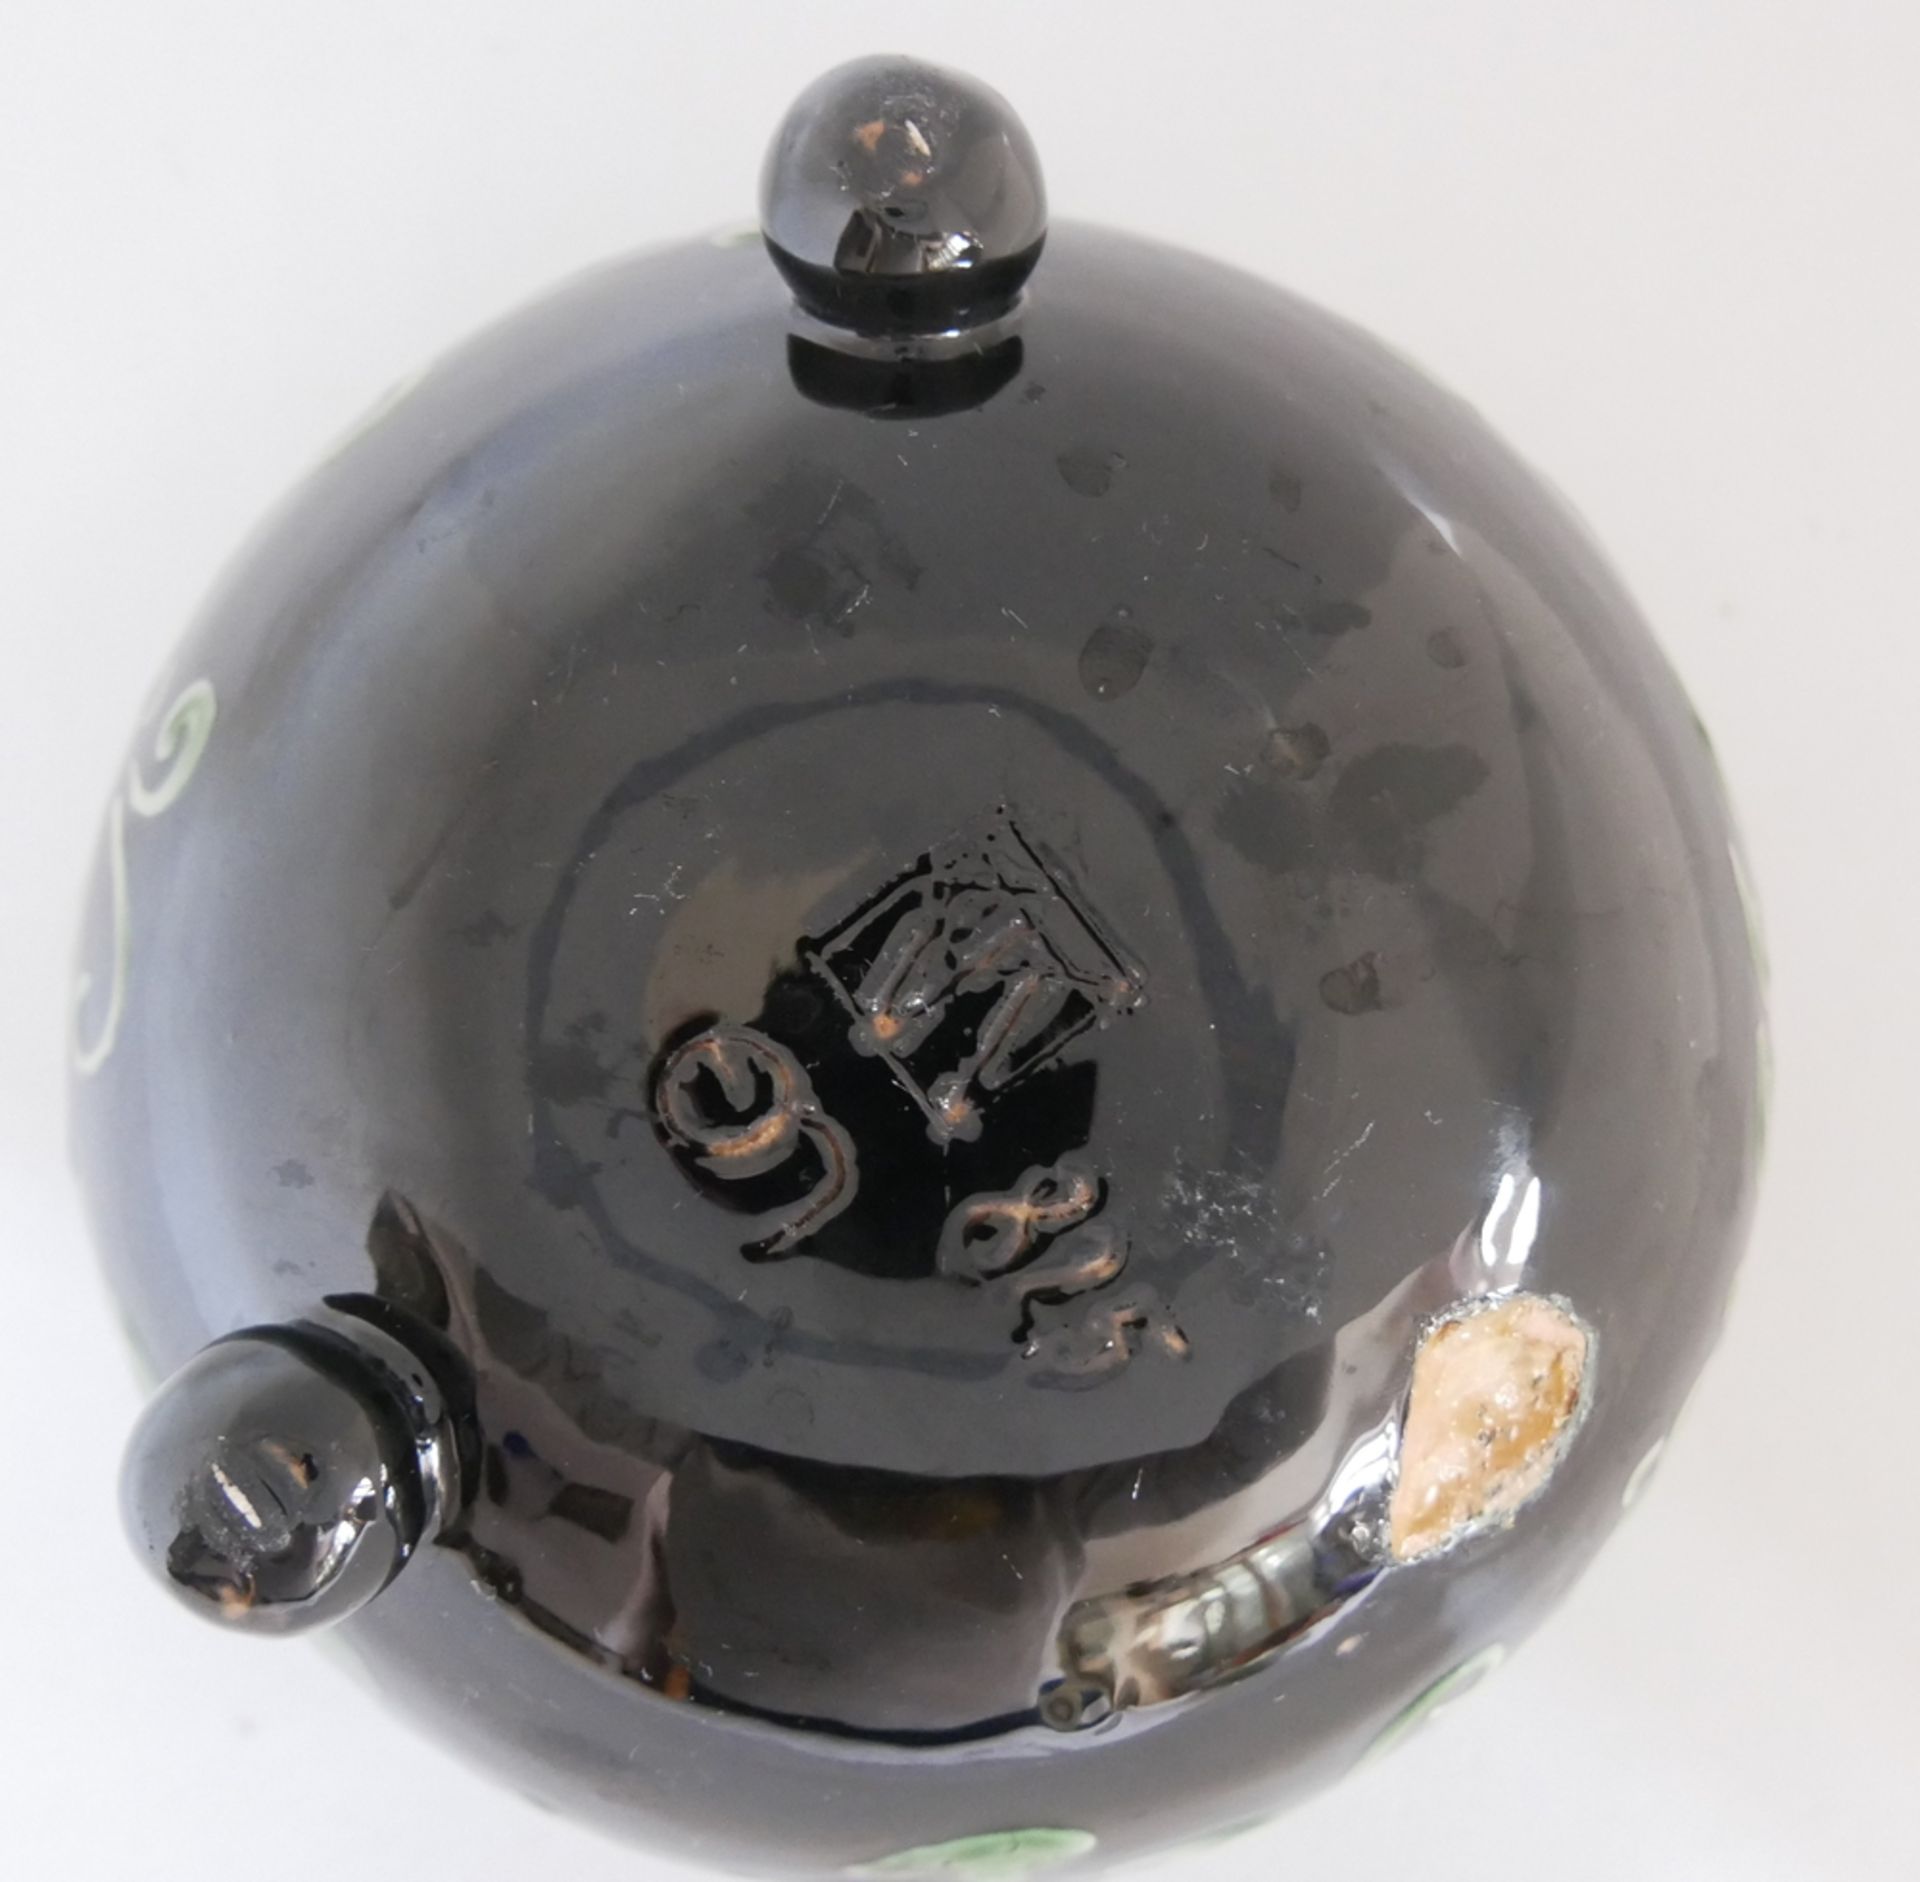 Keramik Vase Kandern am Boden Pressmarke KK im Viereck, Modellnr. 825, schwarz weiße Glasur. - Image 3 of 3